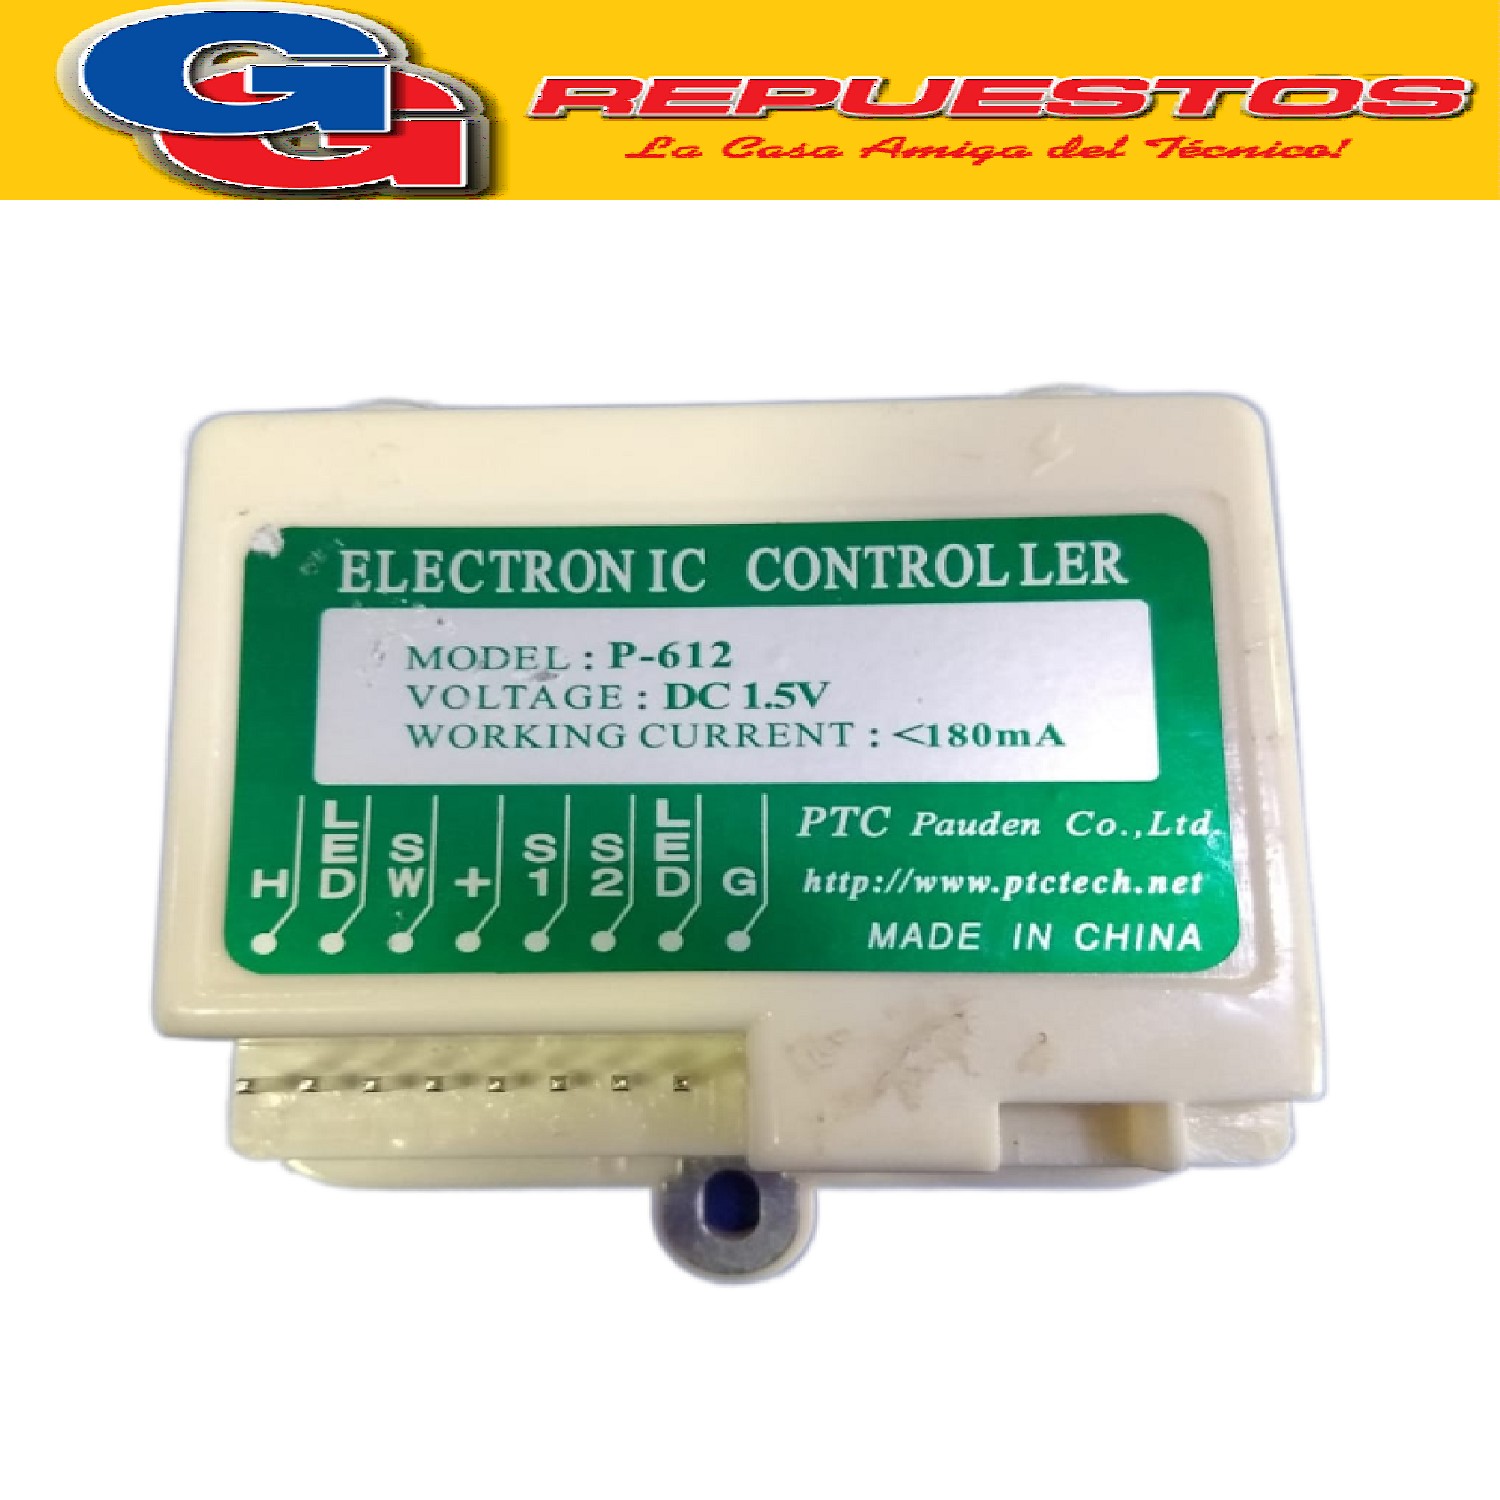 CONTROL ELECTRONICO PARA CALEFON Y CALDERA.- ORBIS  BOTONERA Y MODULO. LEGITIMO.*REP